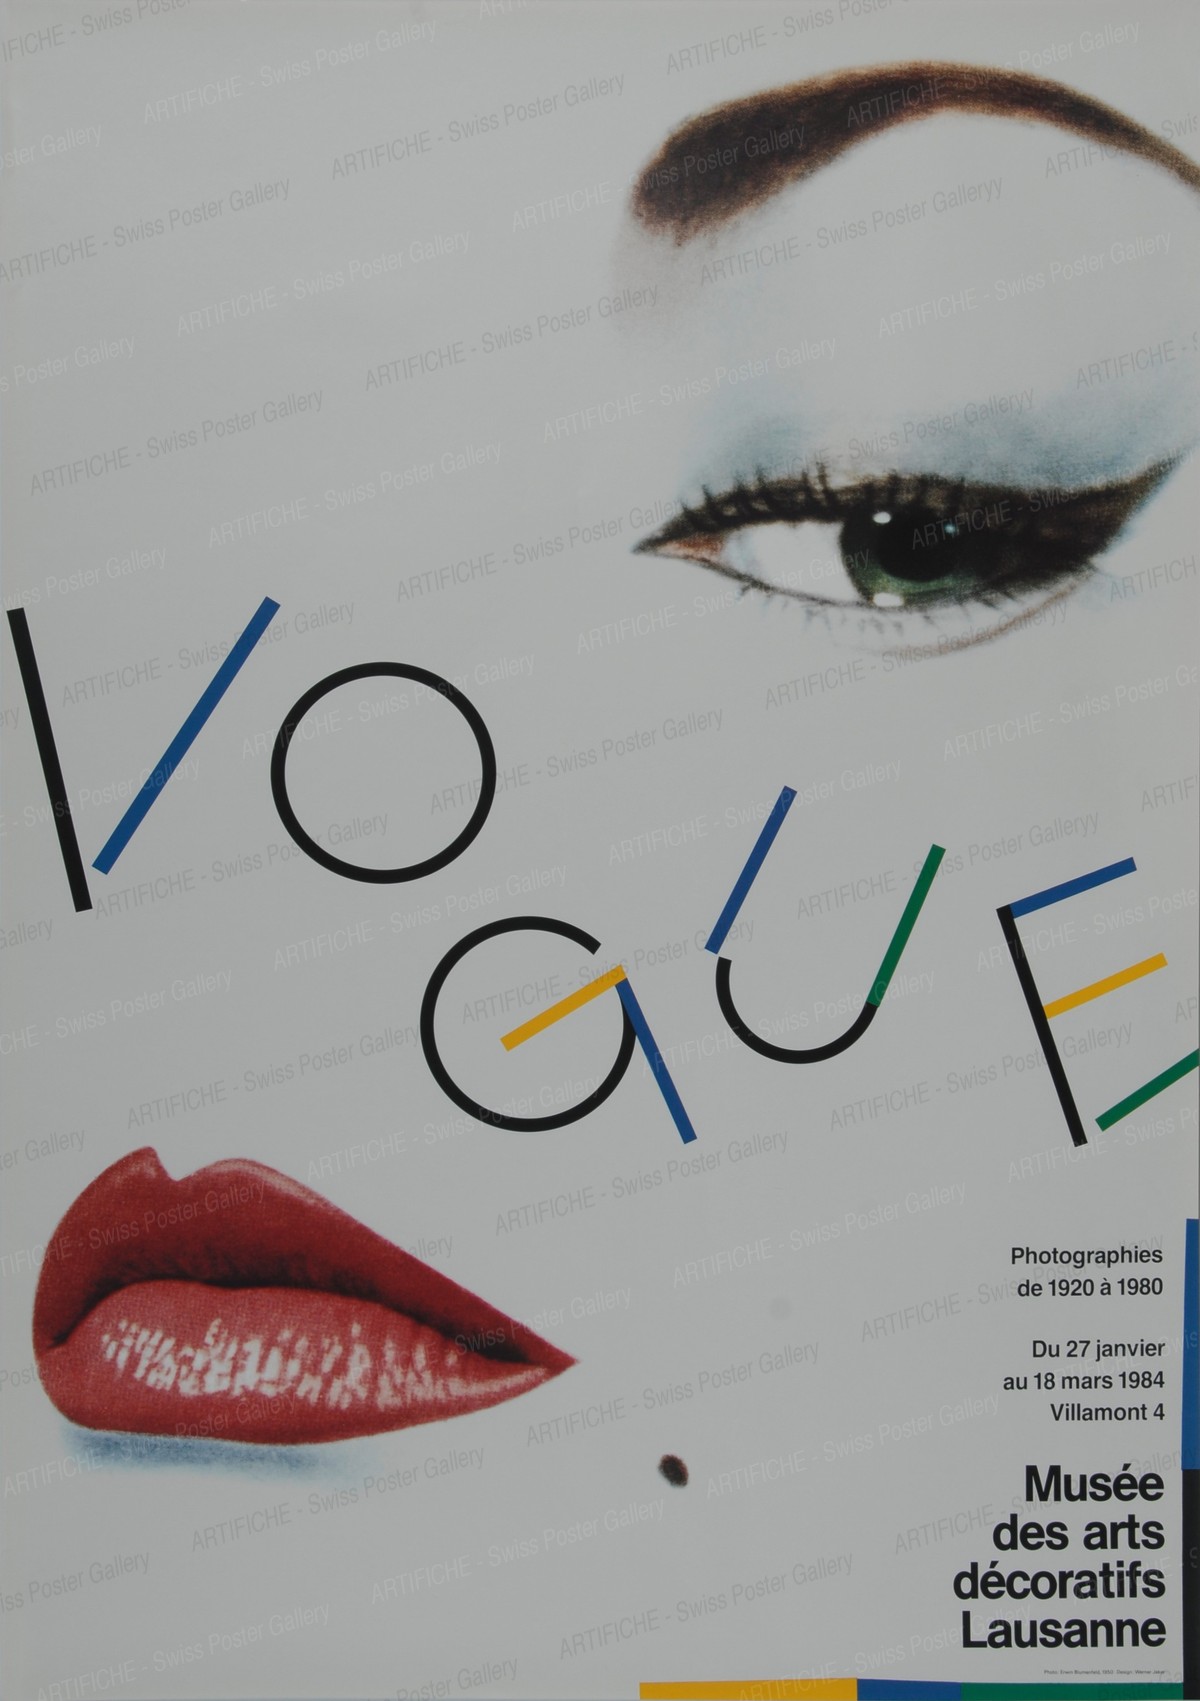 Musée des arts décoratifs Lausanne – Vogue, Werner Jeker